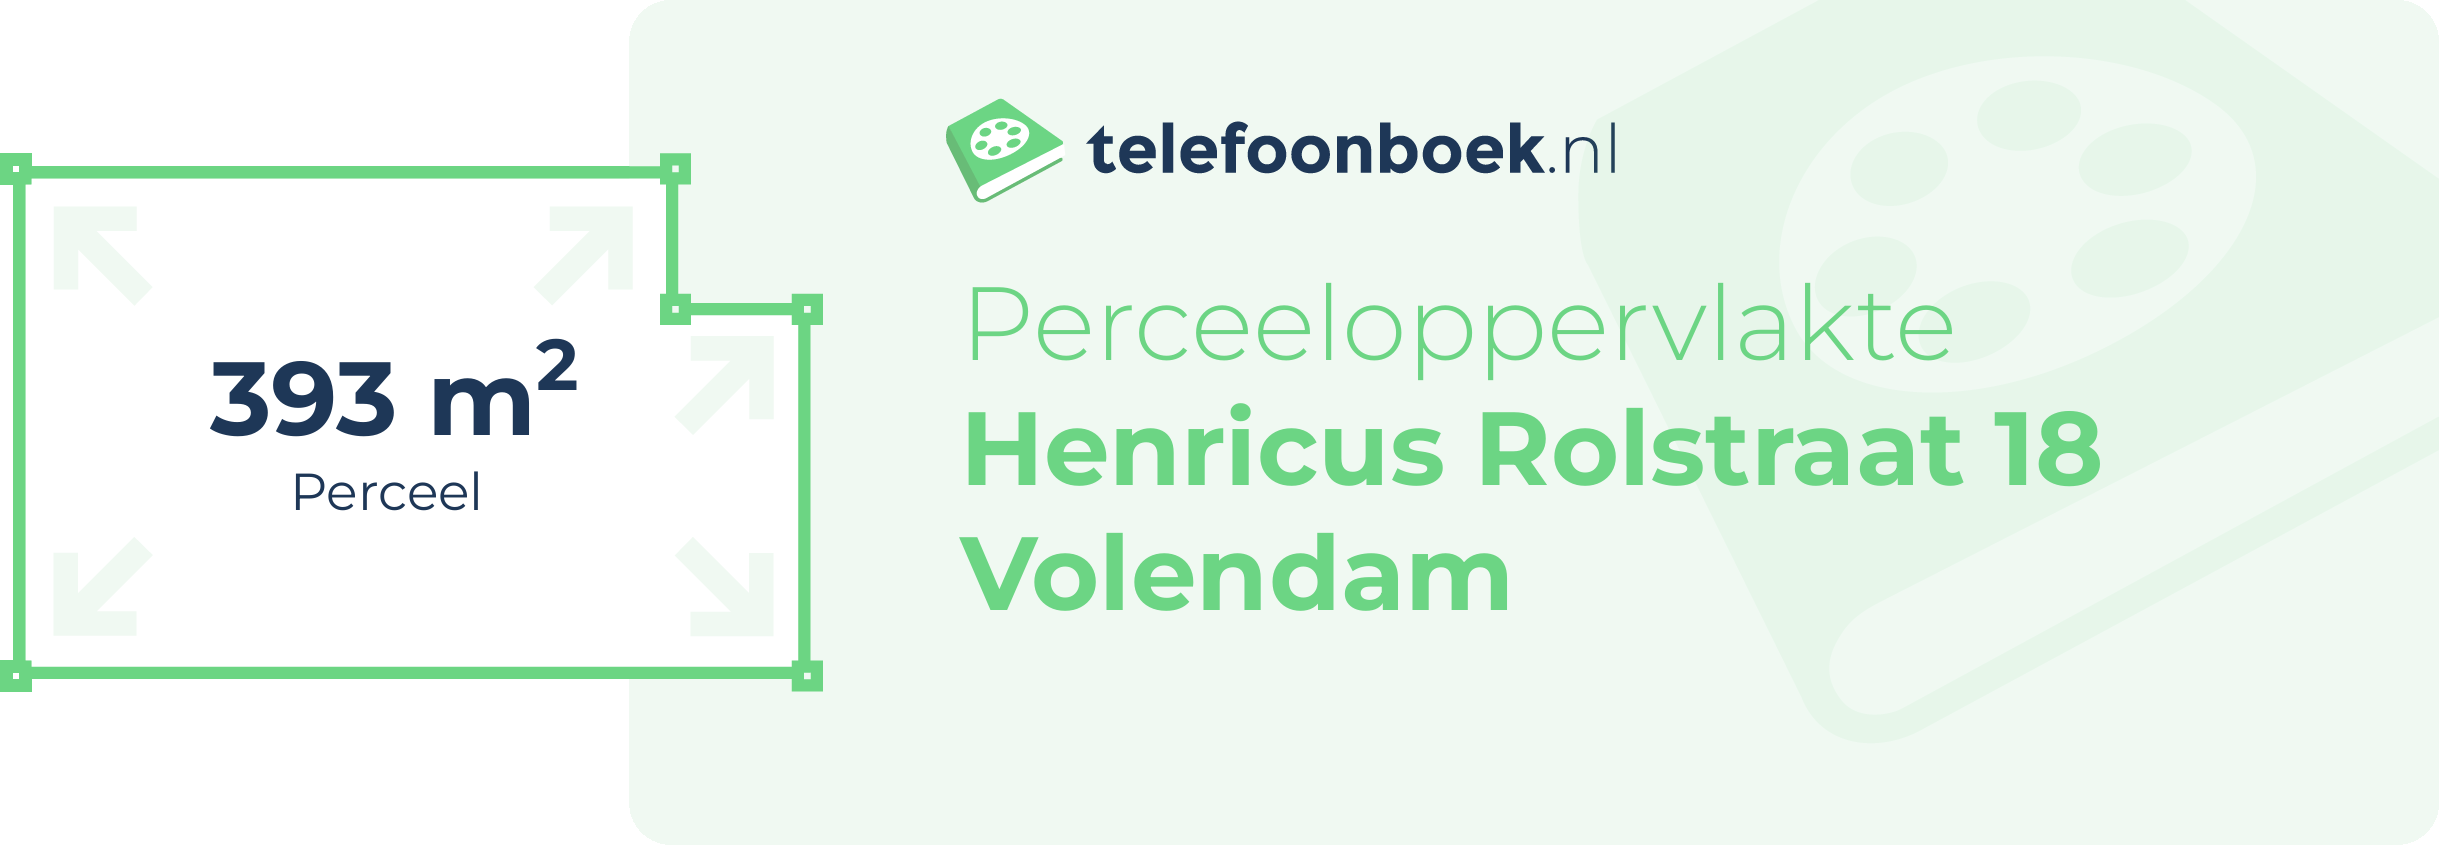 Perceeloppervlakte Henricus Rolstraat 18 Volendam